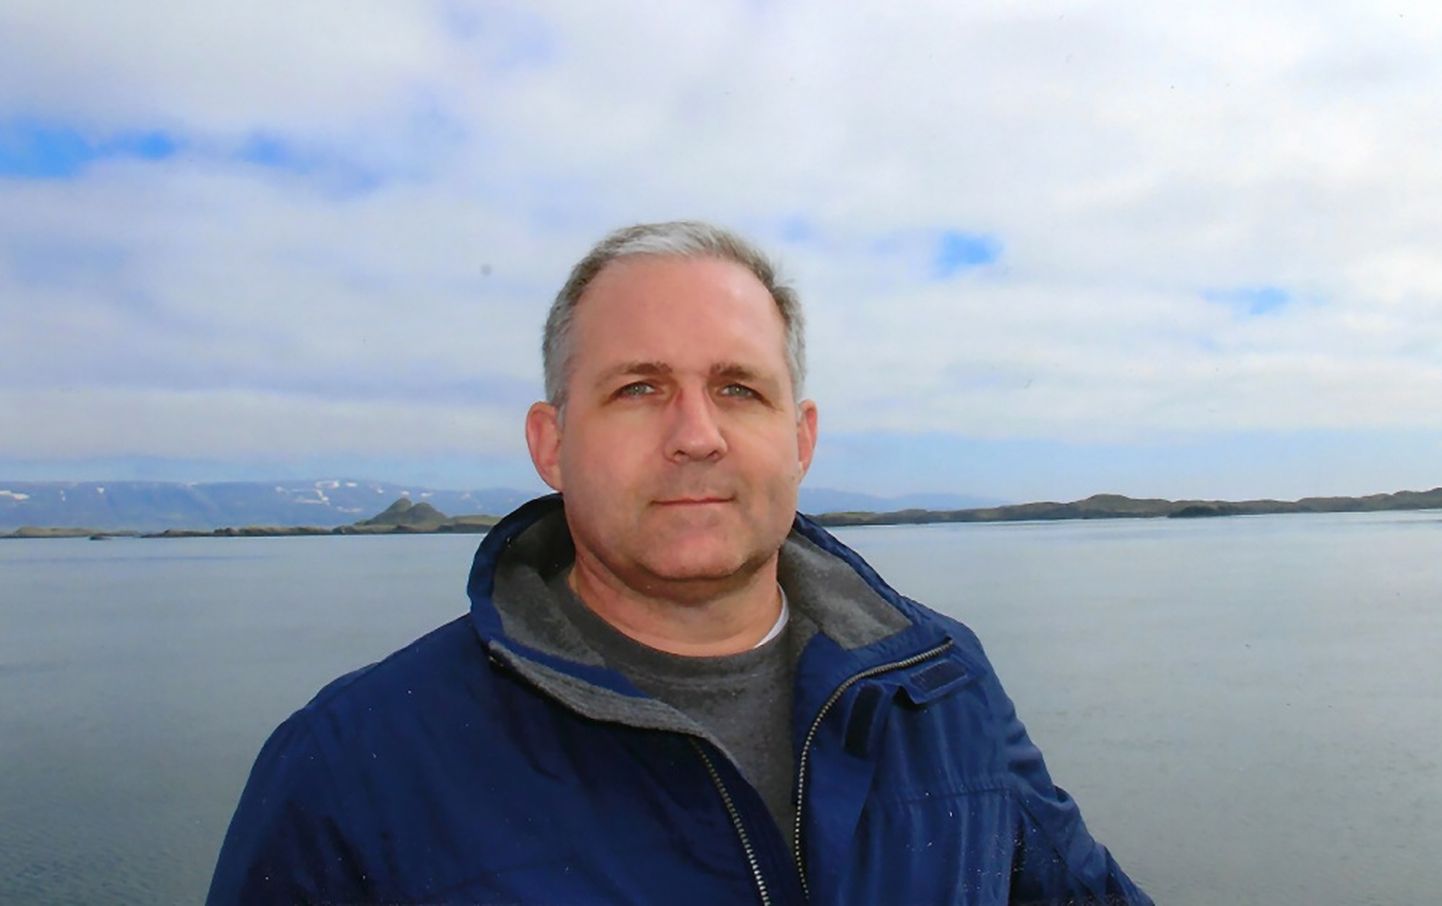 Krievijā par spiegošanu aizturētais amerikānis Pols Vilans